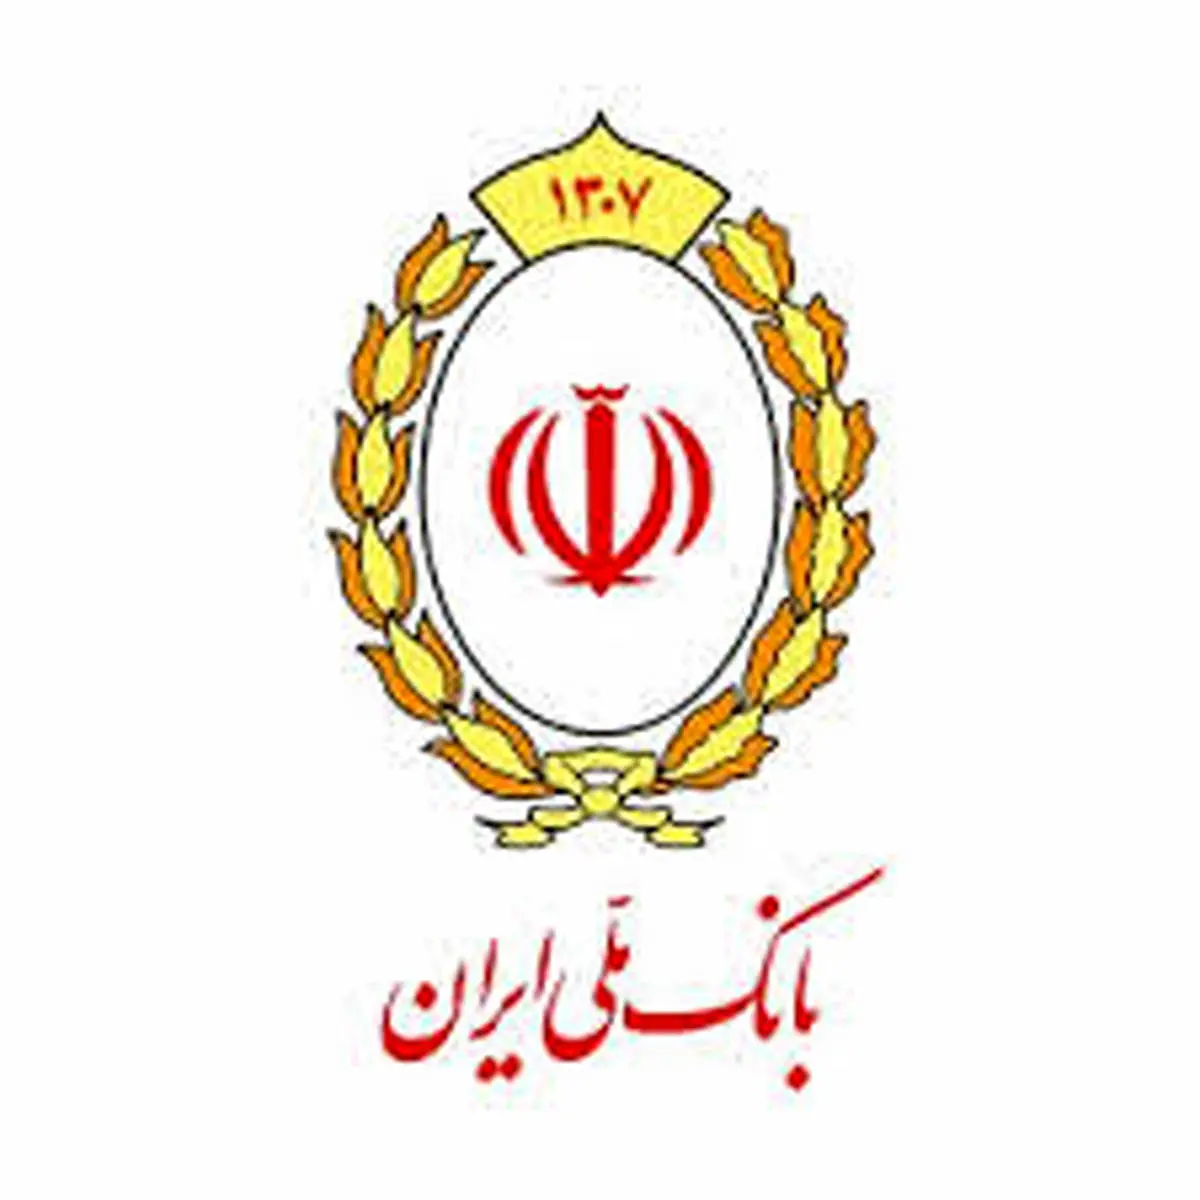 پشتیبانی های بانک ملی ایران زمینه ساز توسعه شرکت اروم آدا